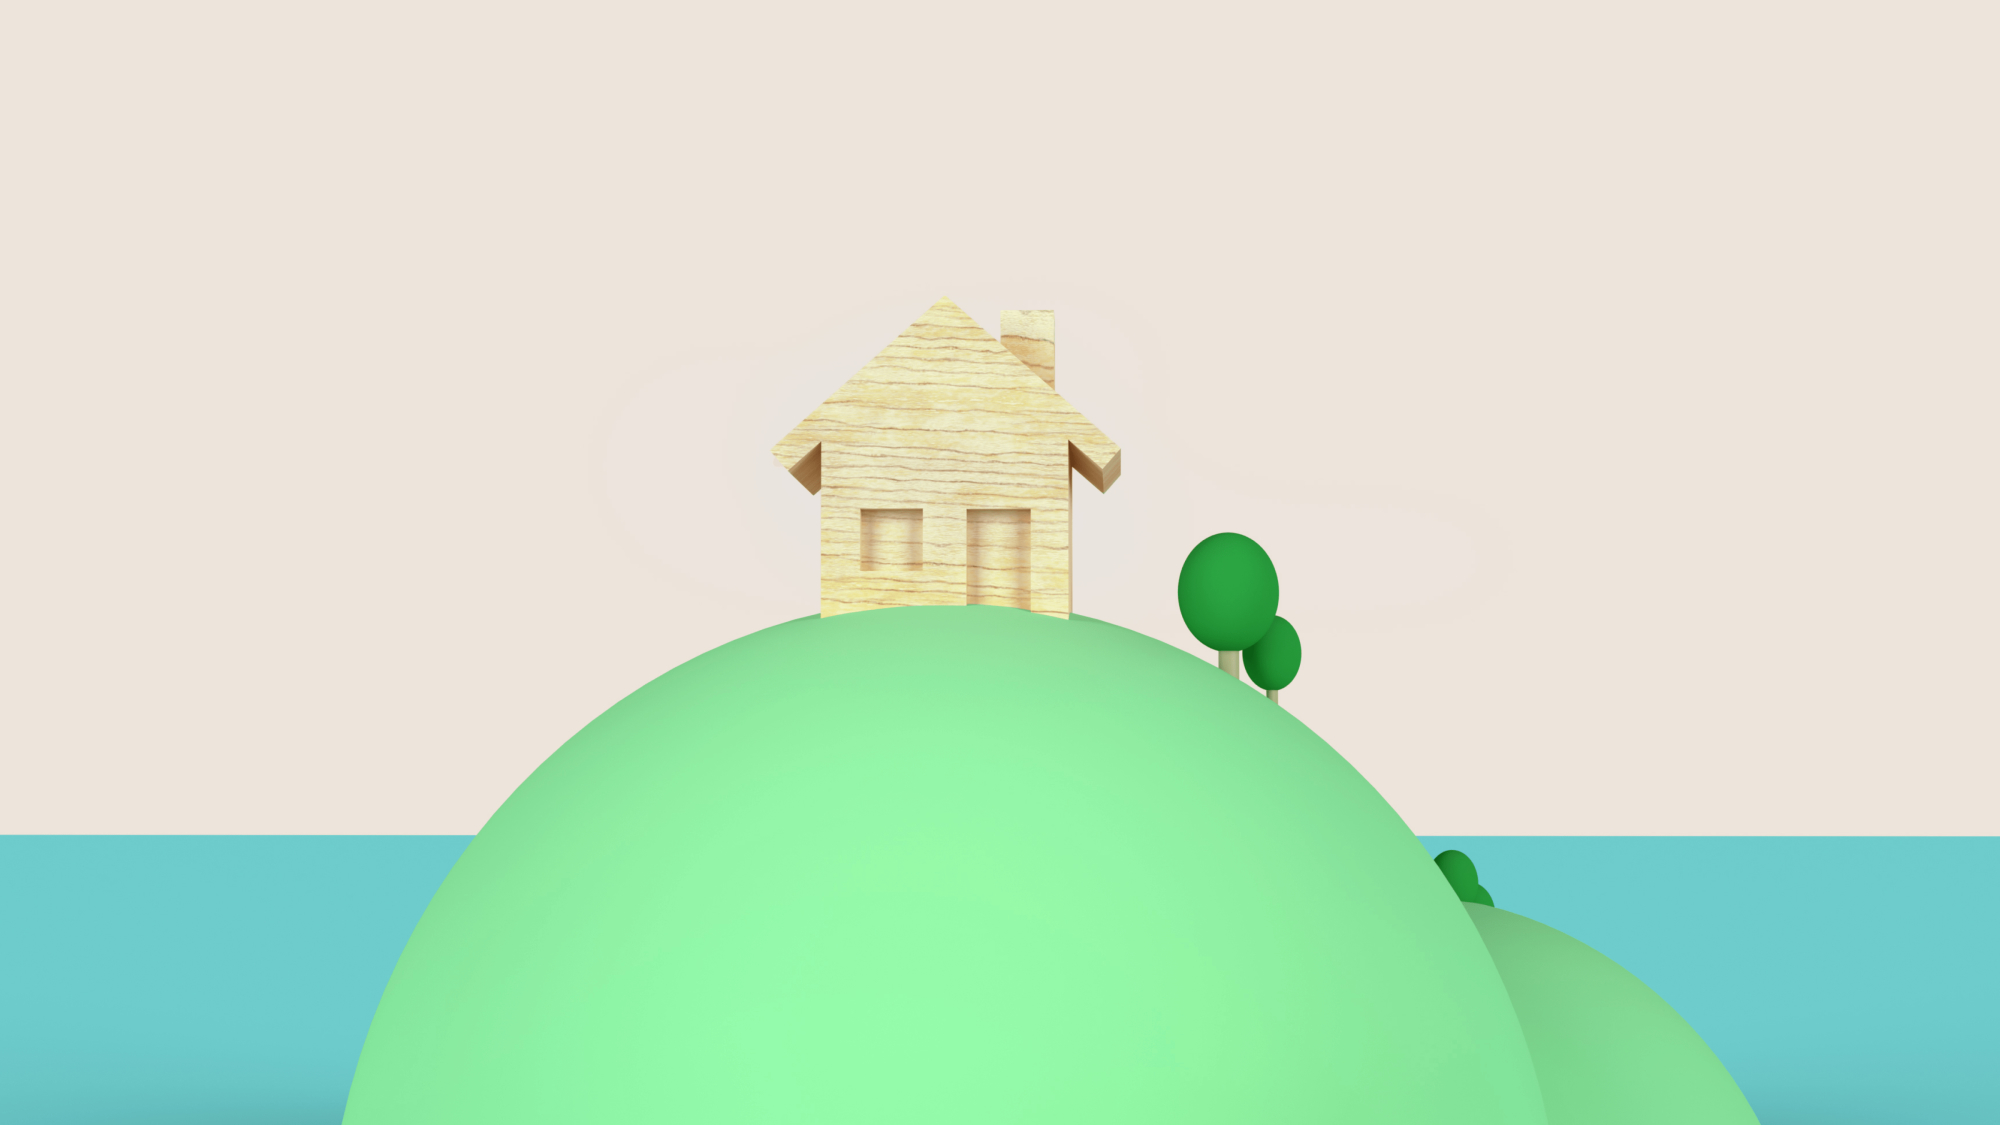 Twee groene bollen met daarop een houten huis en een paar bomen. 